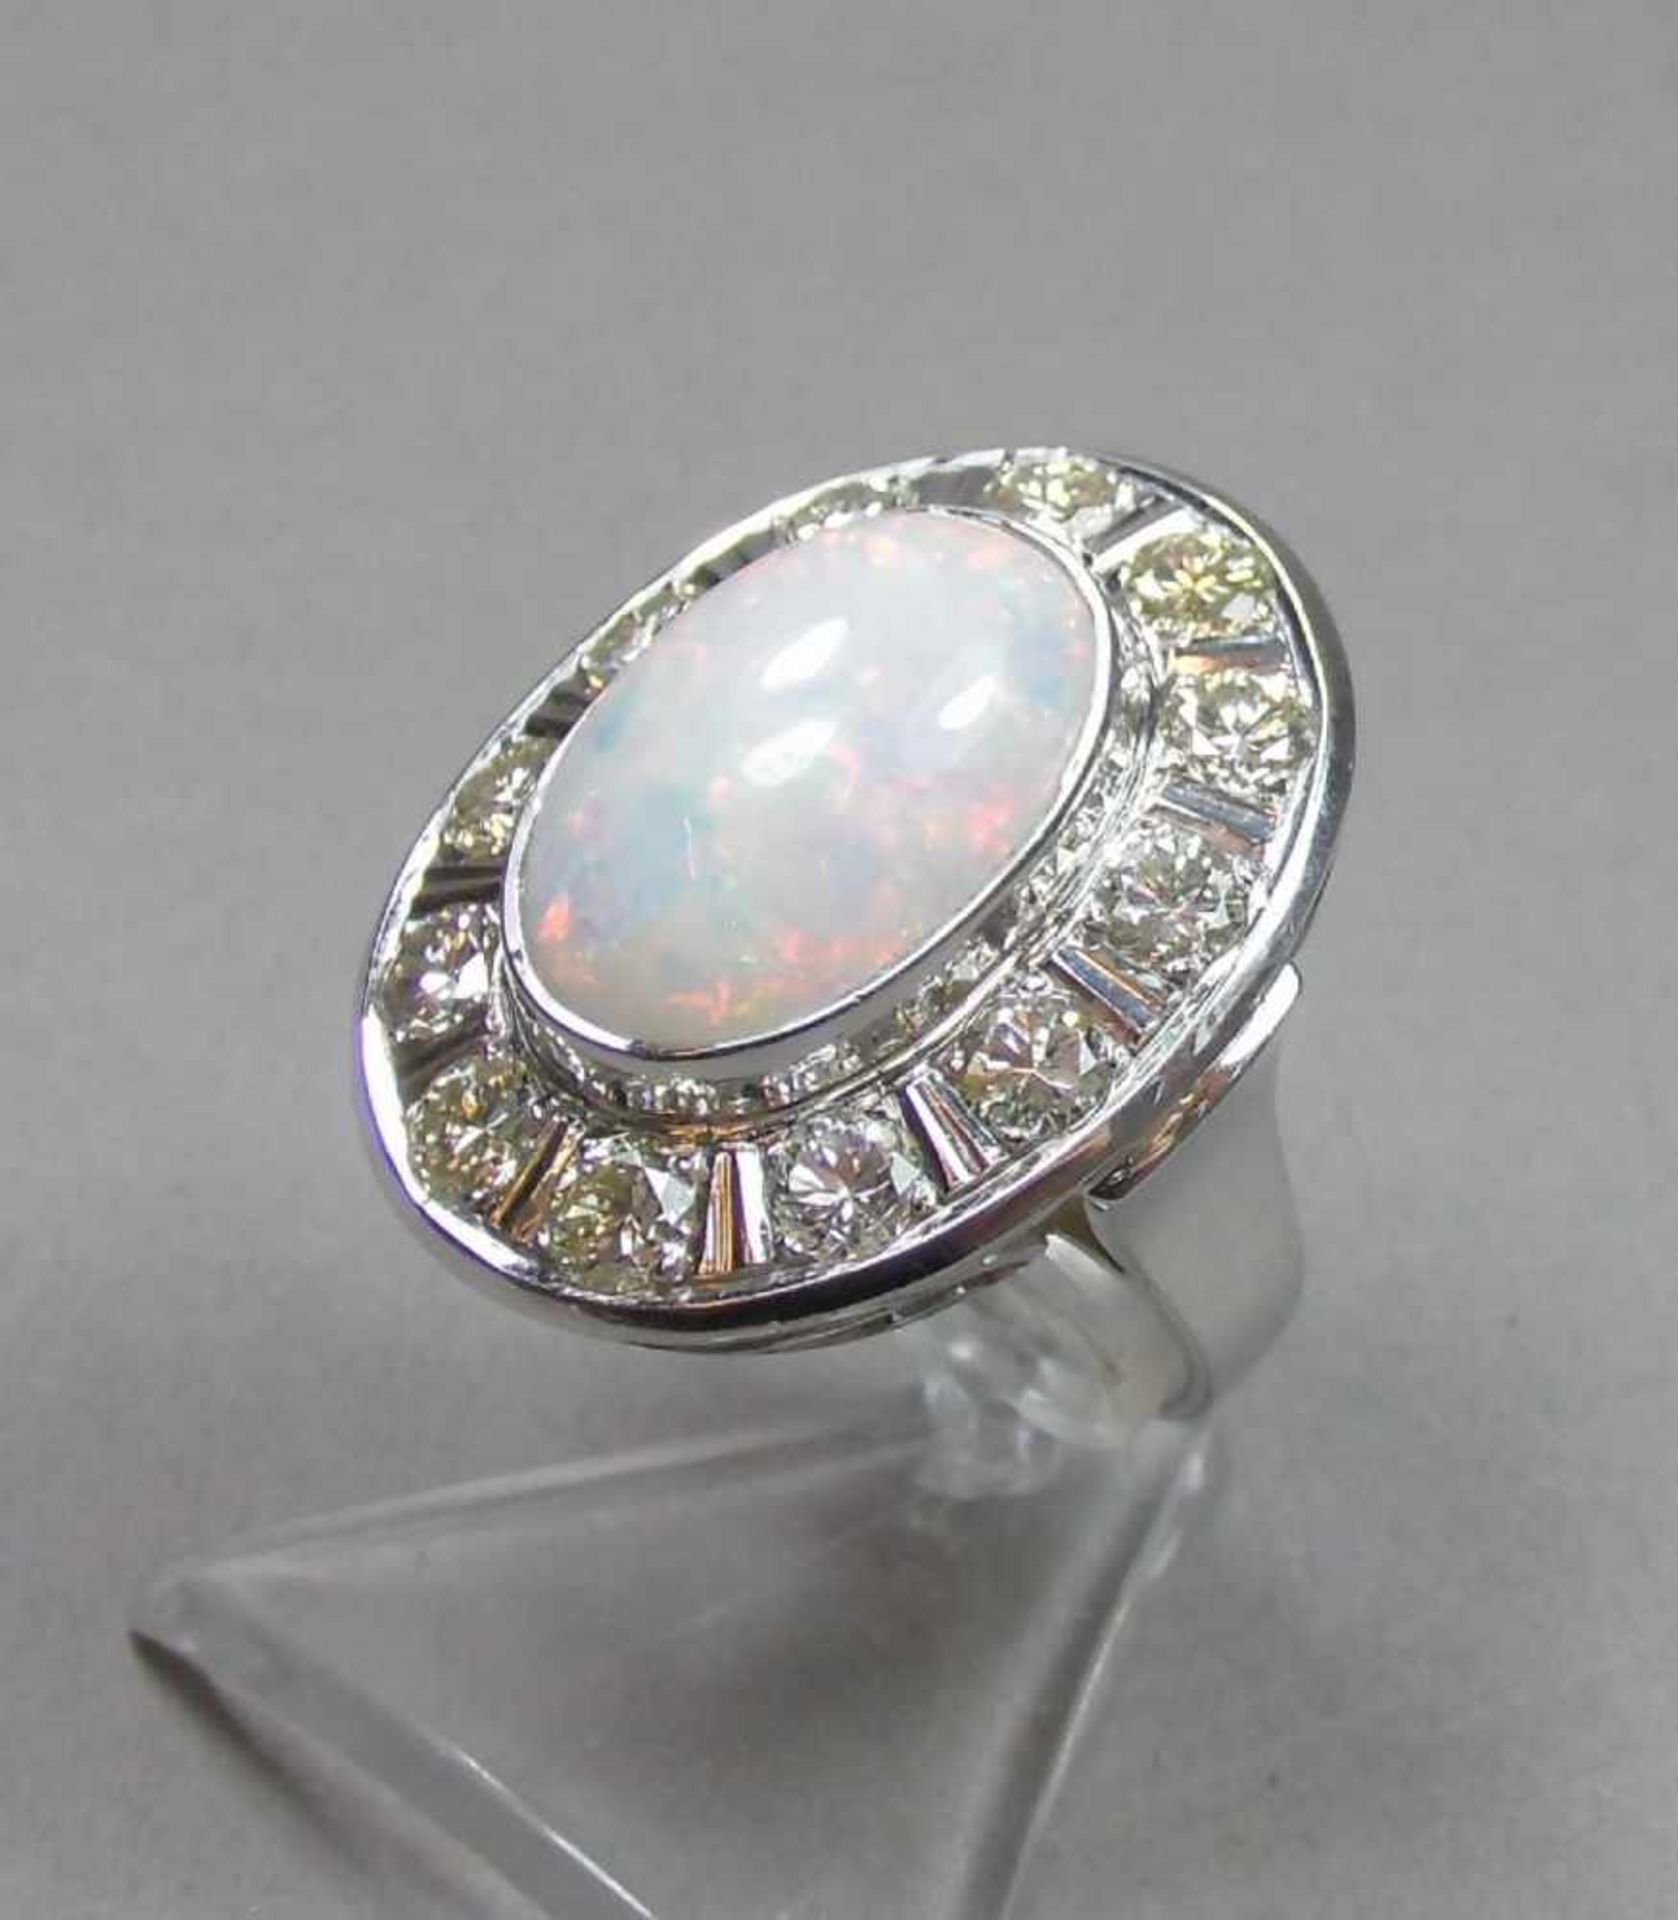 EXCLUSIVER RING mit weißem Opal im Cobochon-Schliff, umgeben von 12 Brillanten von je 0,2 kt. (